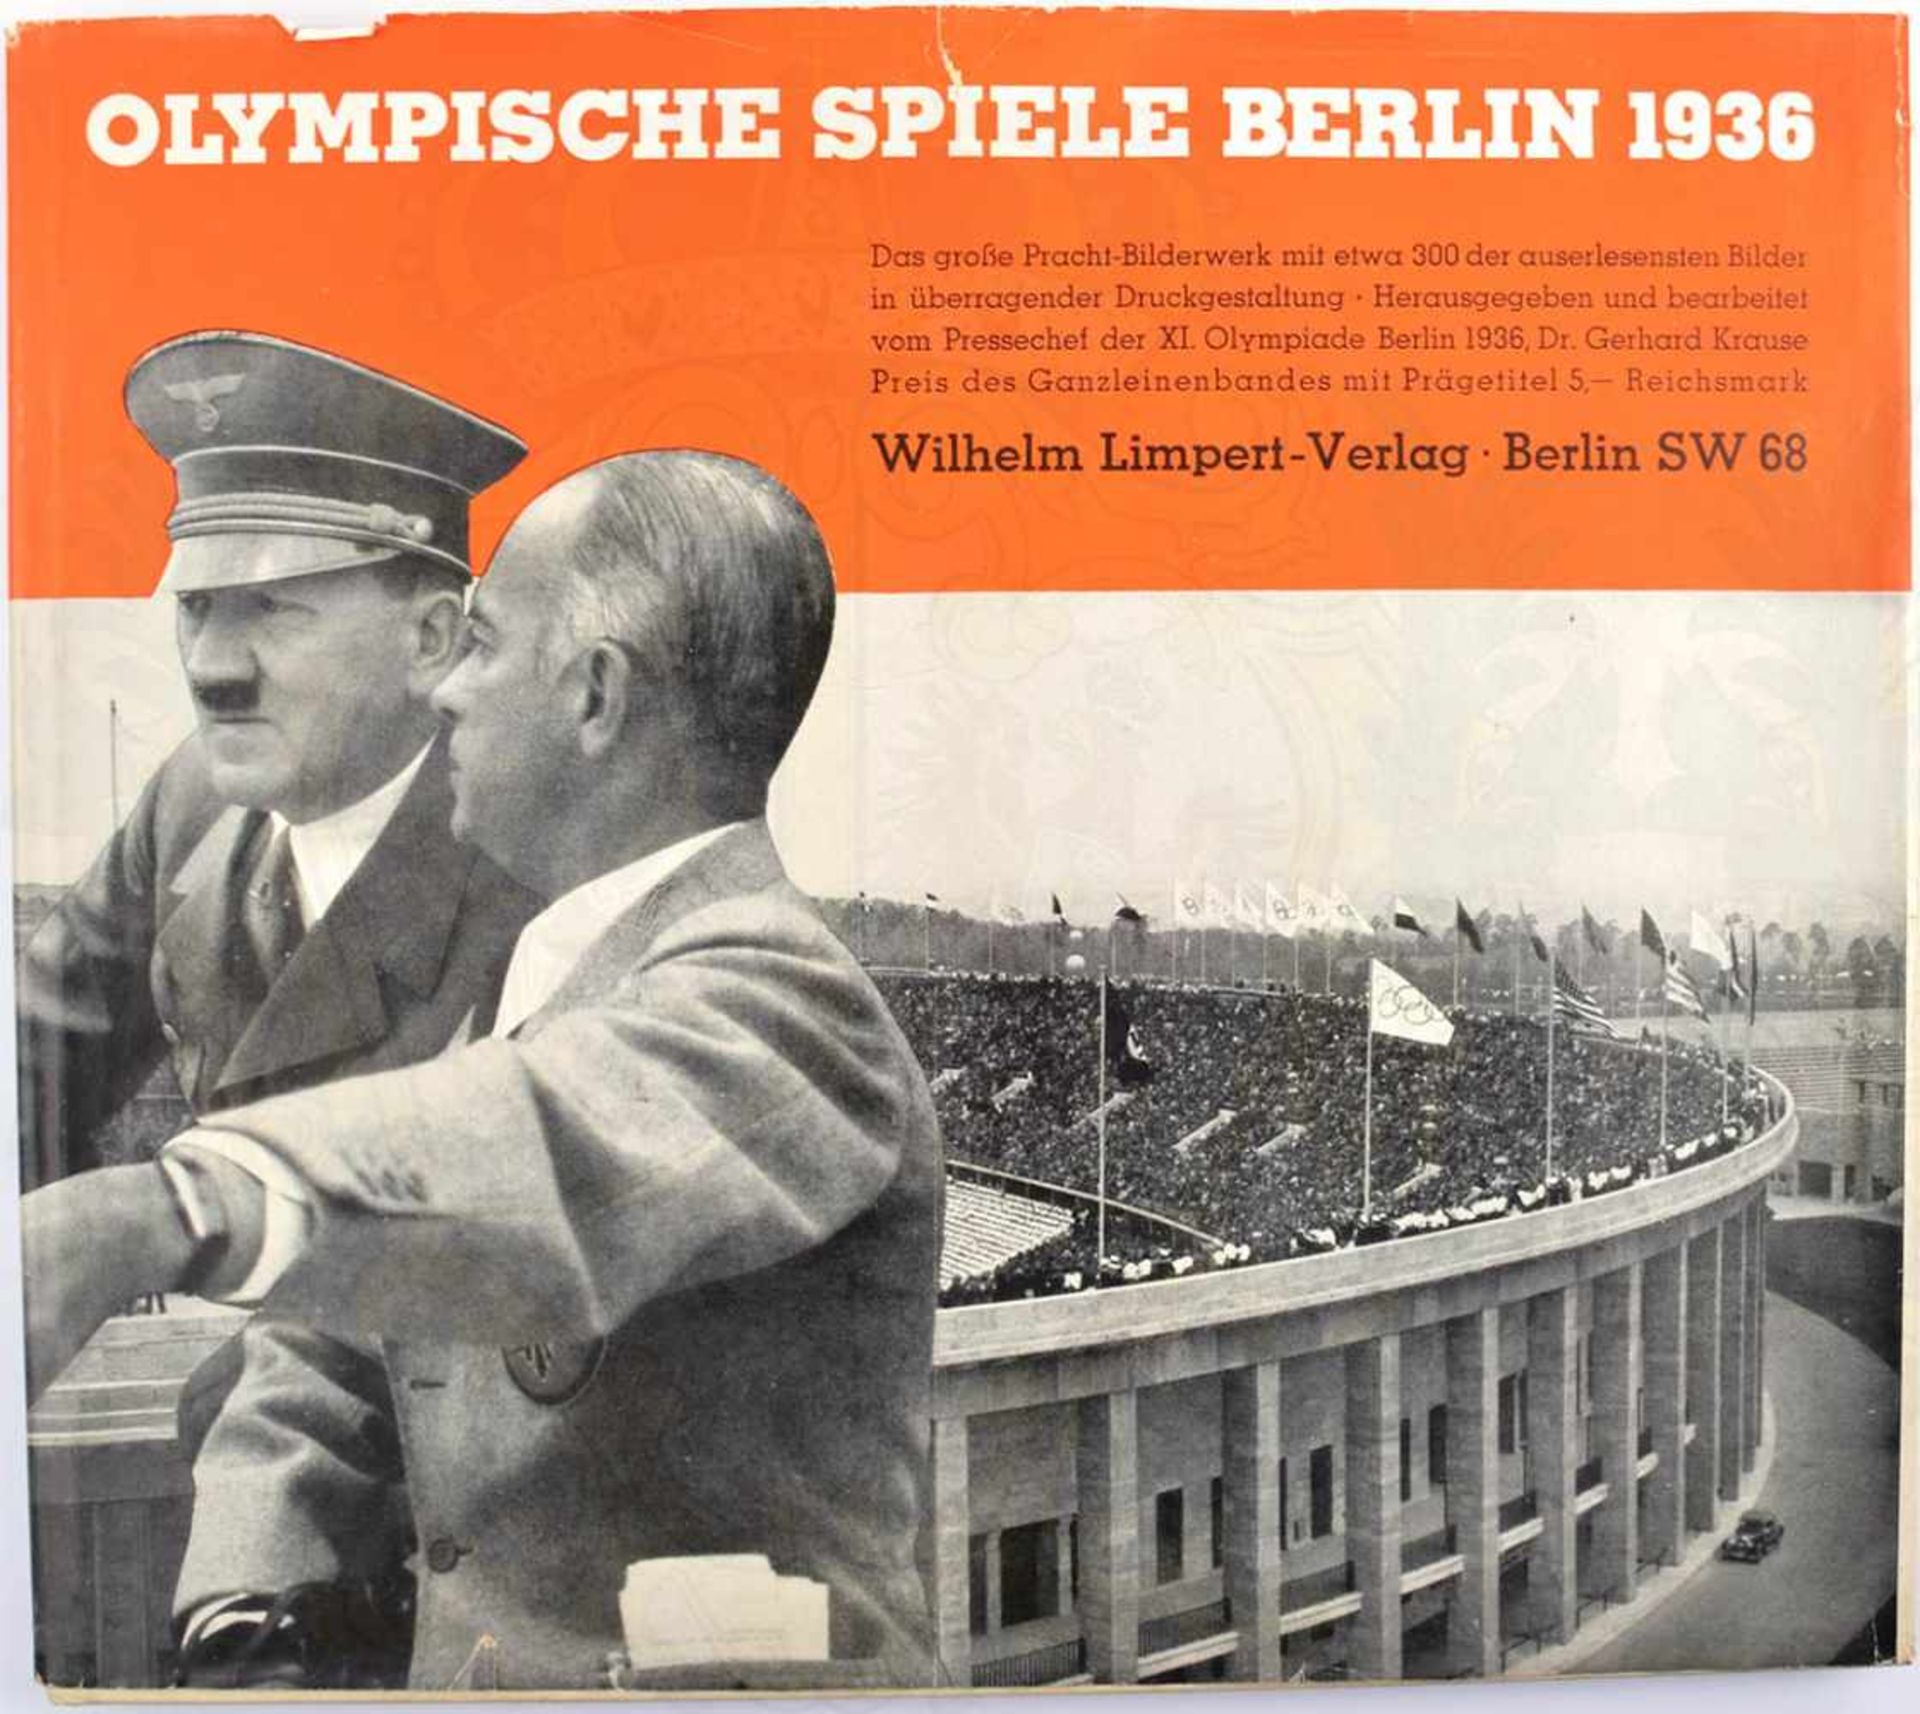 BILDBAND OLYMPISCHE SPIELE BERLIN 1936, G. Krause, Wilhelm Limpert-Verlag Berlin 1936, 144 S., ca.